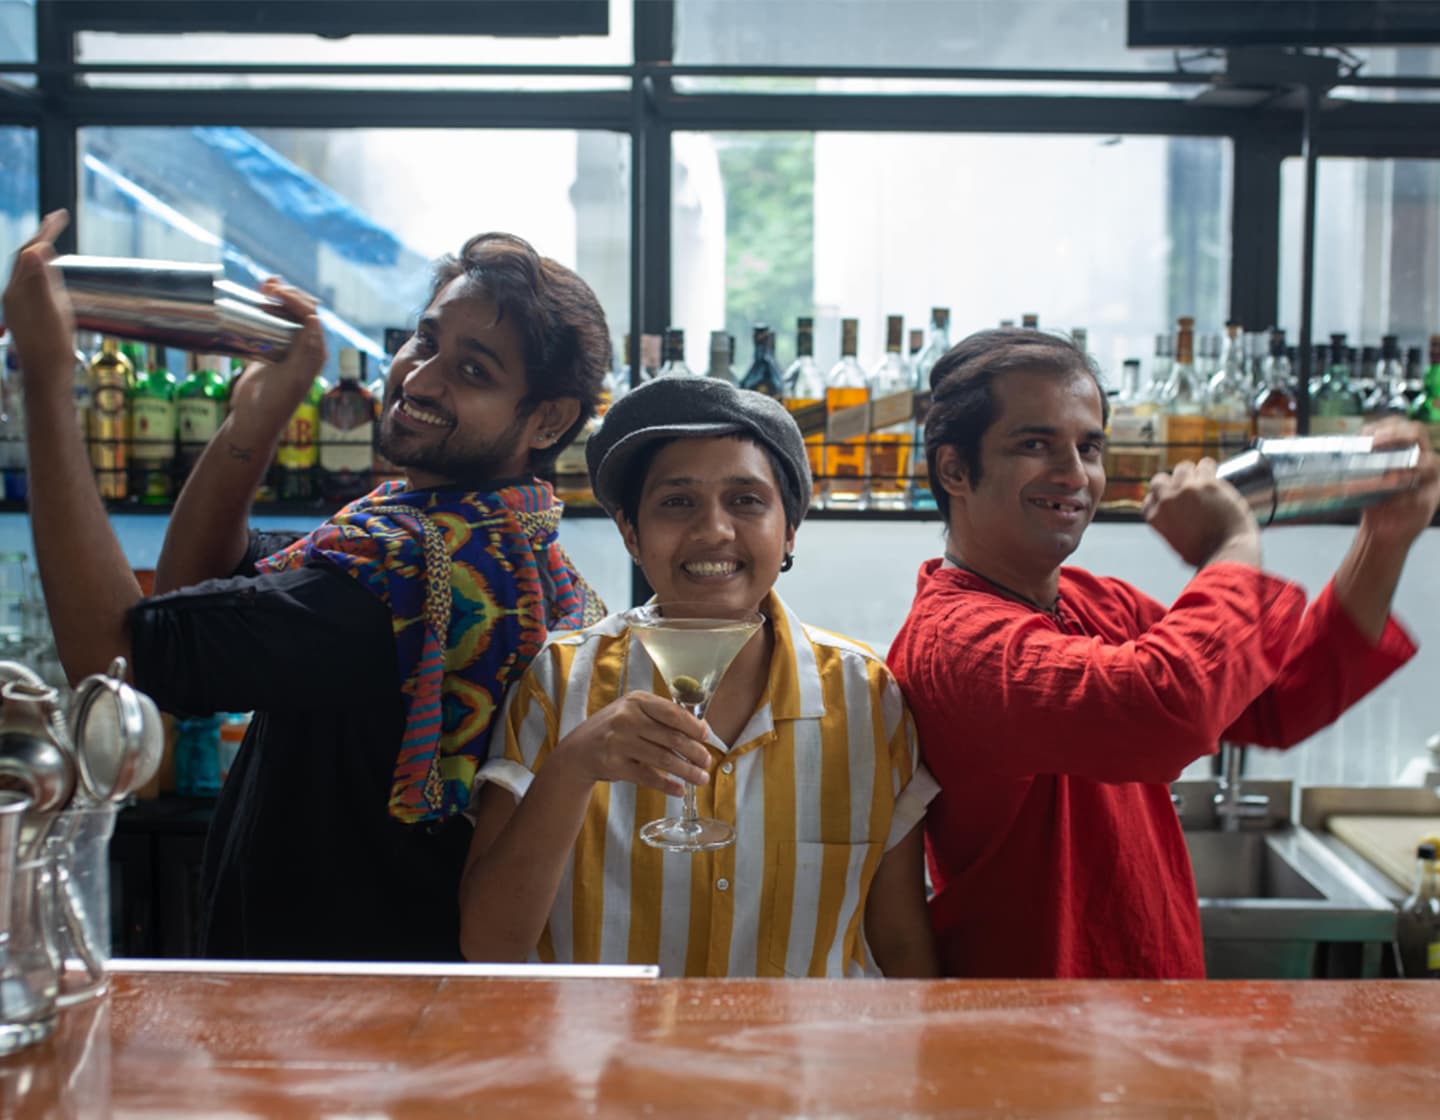 Tres bartenders posando juntos, los de afuera sosteniendo cocteleras y sonriendo a la cámara. El del medio levanta una copa de cóctel y sonríe a la cámara.